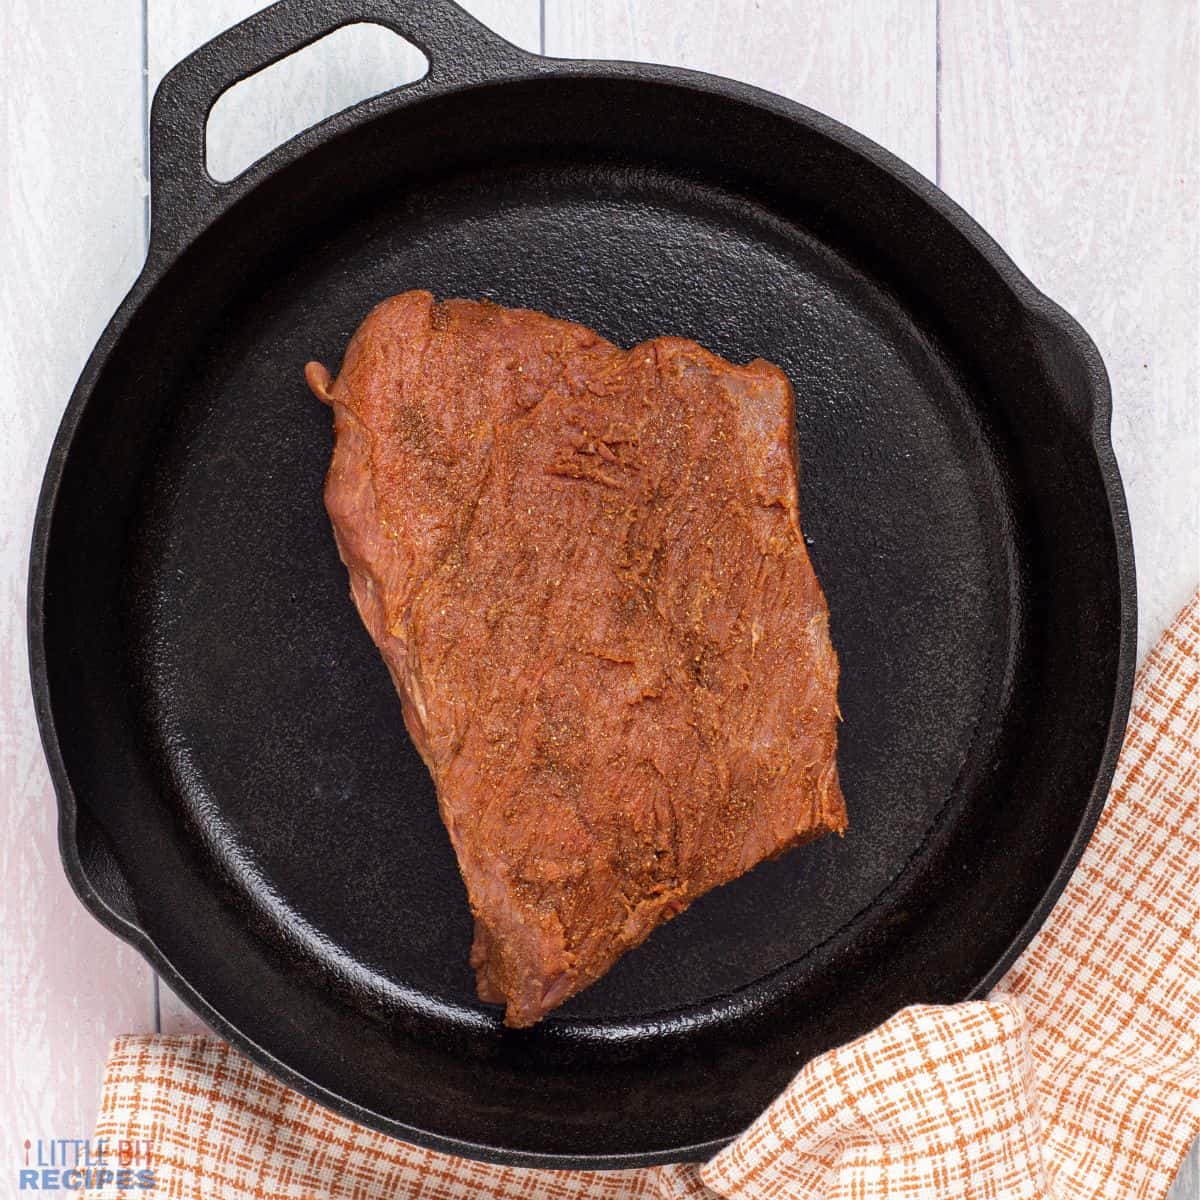 seasoned steak in cast iron skillet.